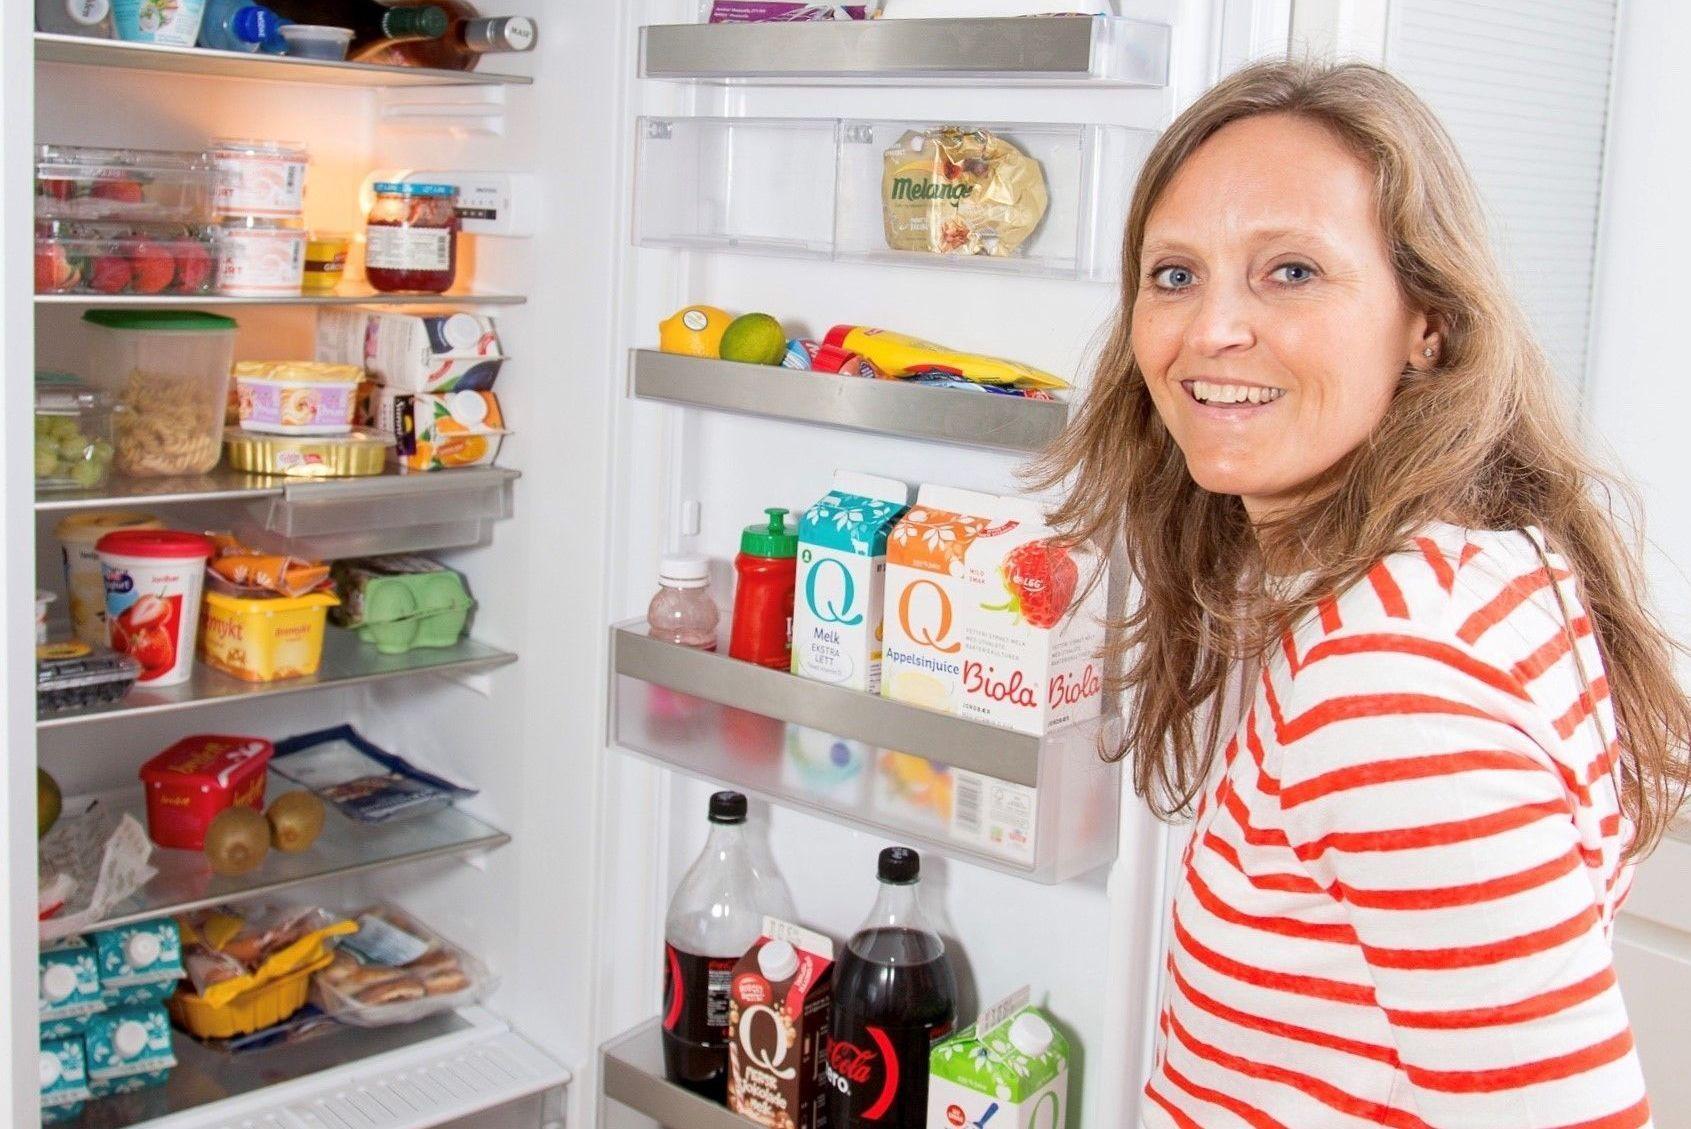 MATREDDER: Mette Nygård Havre står bak kampanjen Spis opp maten. Hun og familien er eksperter på å spise opp maten hjemme. Foto: Spis opp maten